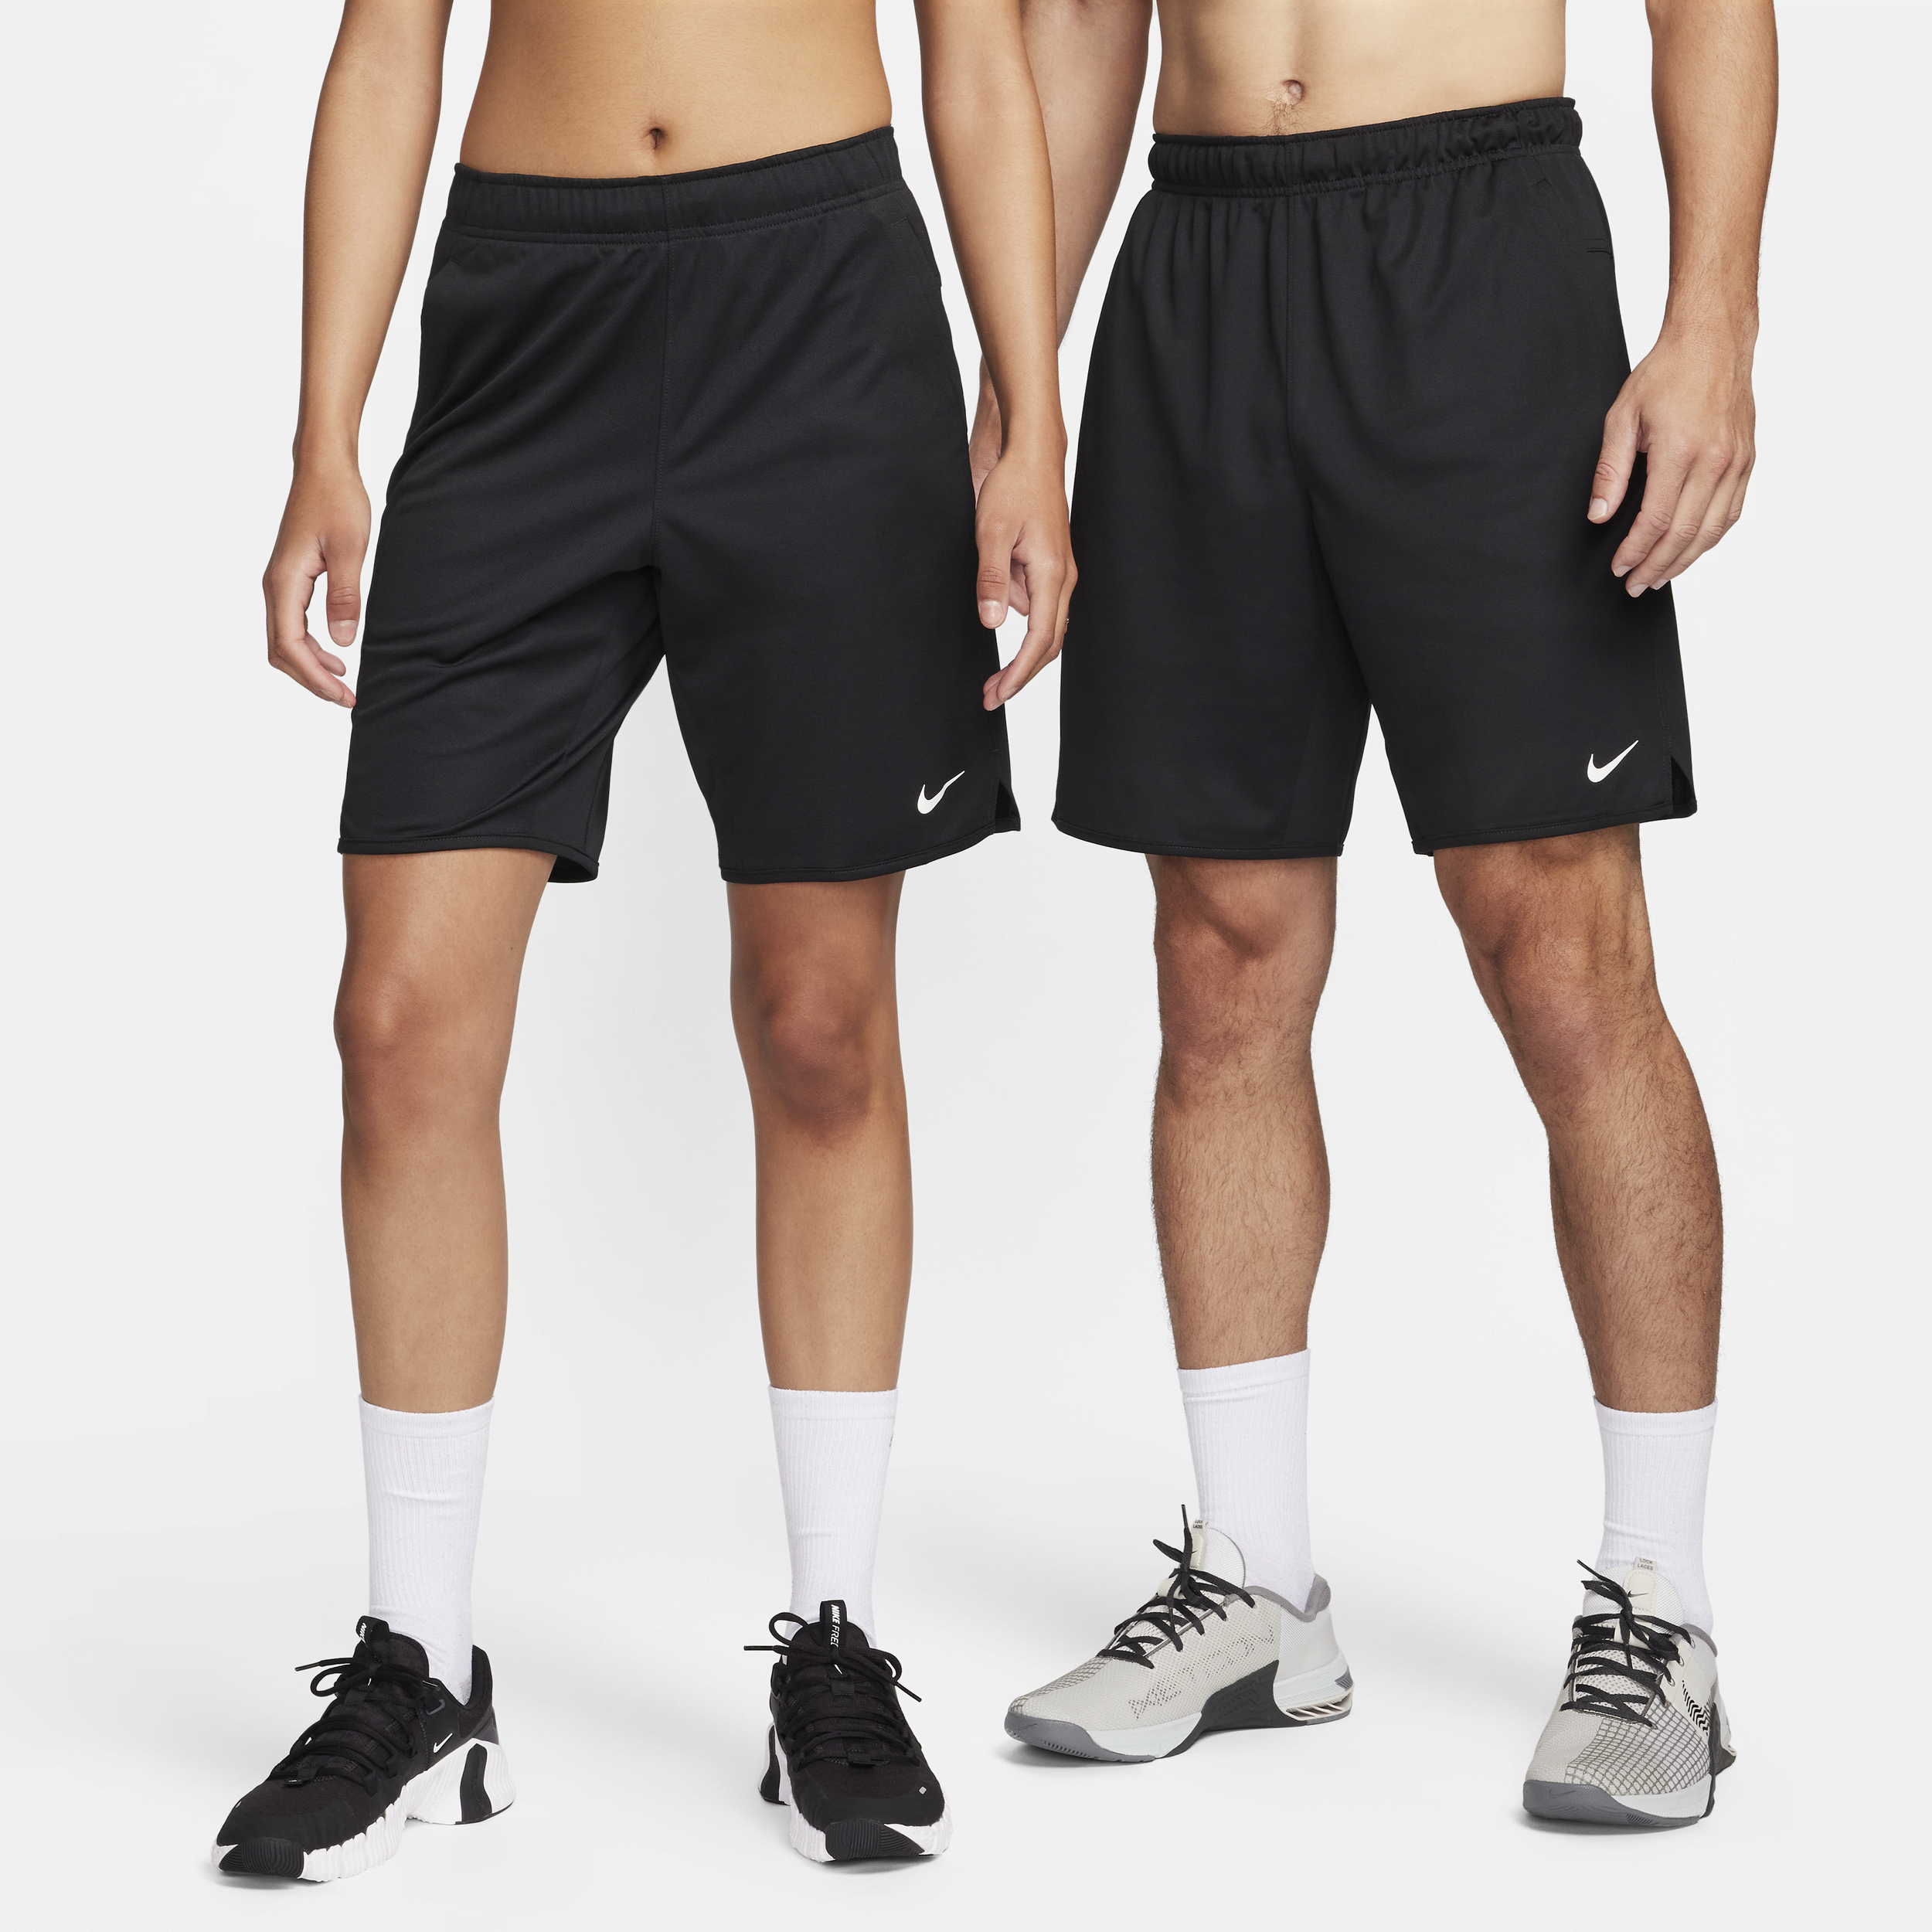 Alsidige Nike Totality-Dri-FIT-shorts (23 cm) uden for til mænd - sort